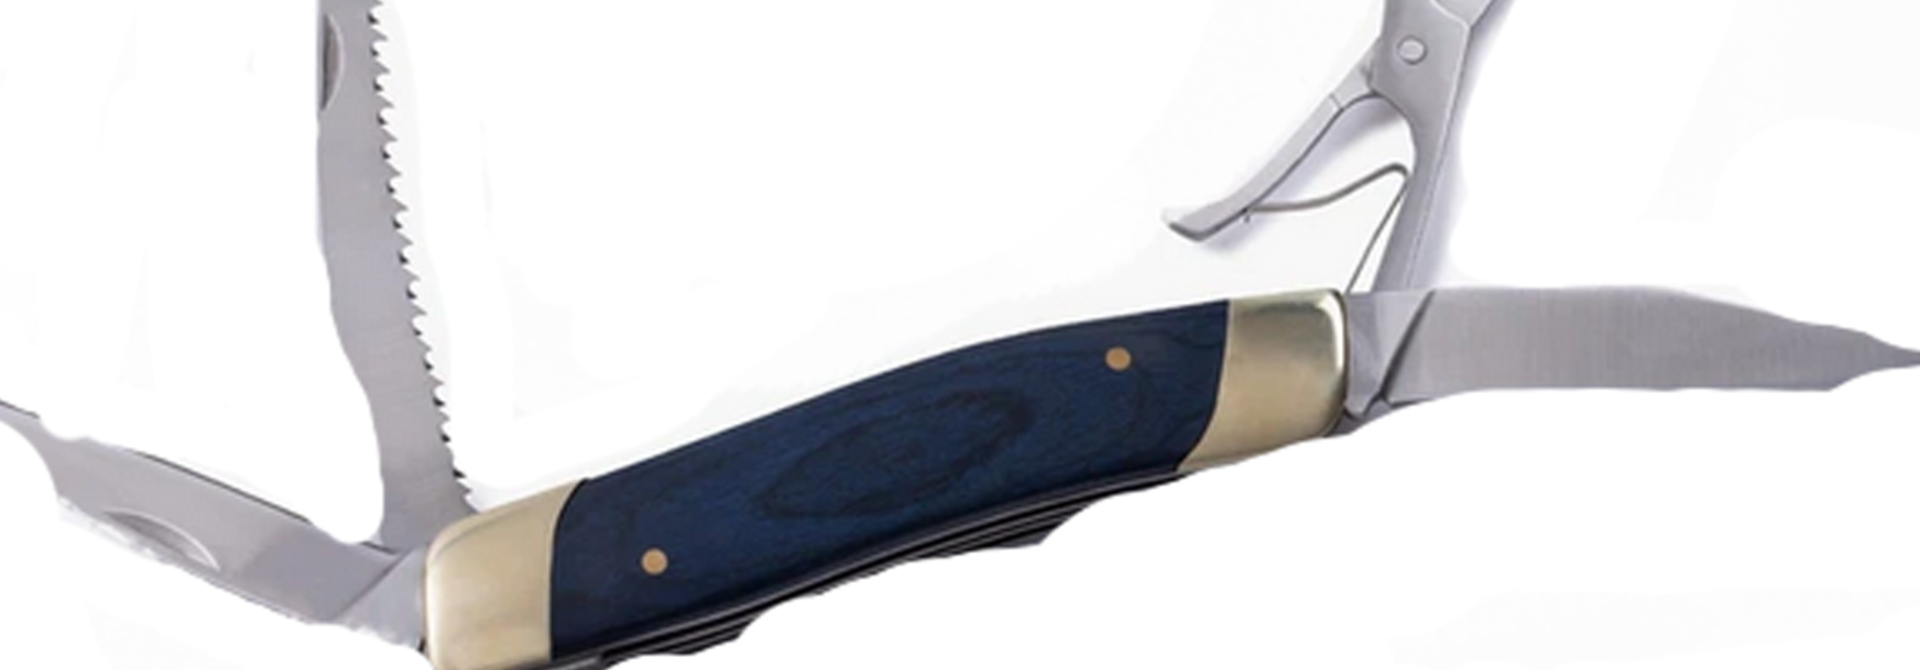 Multi-Tool Pocket Knife, Blue